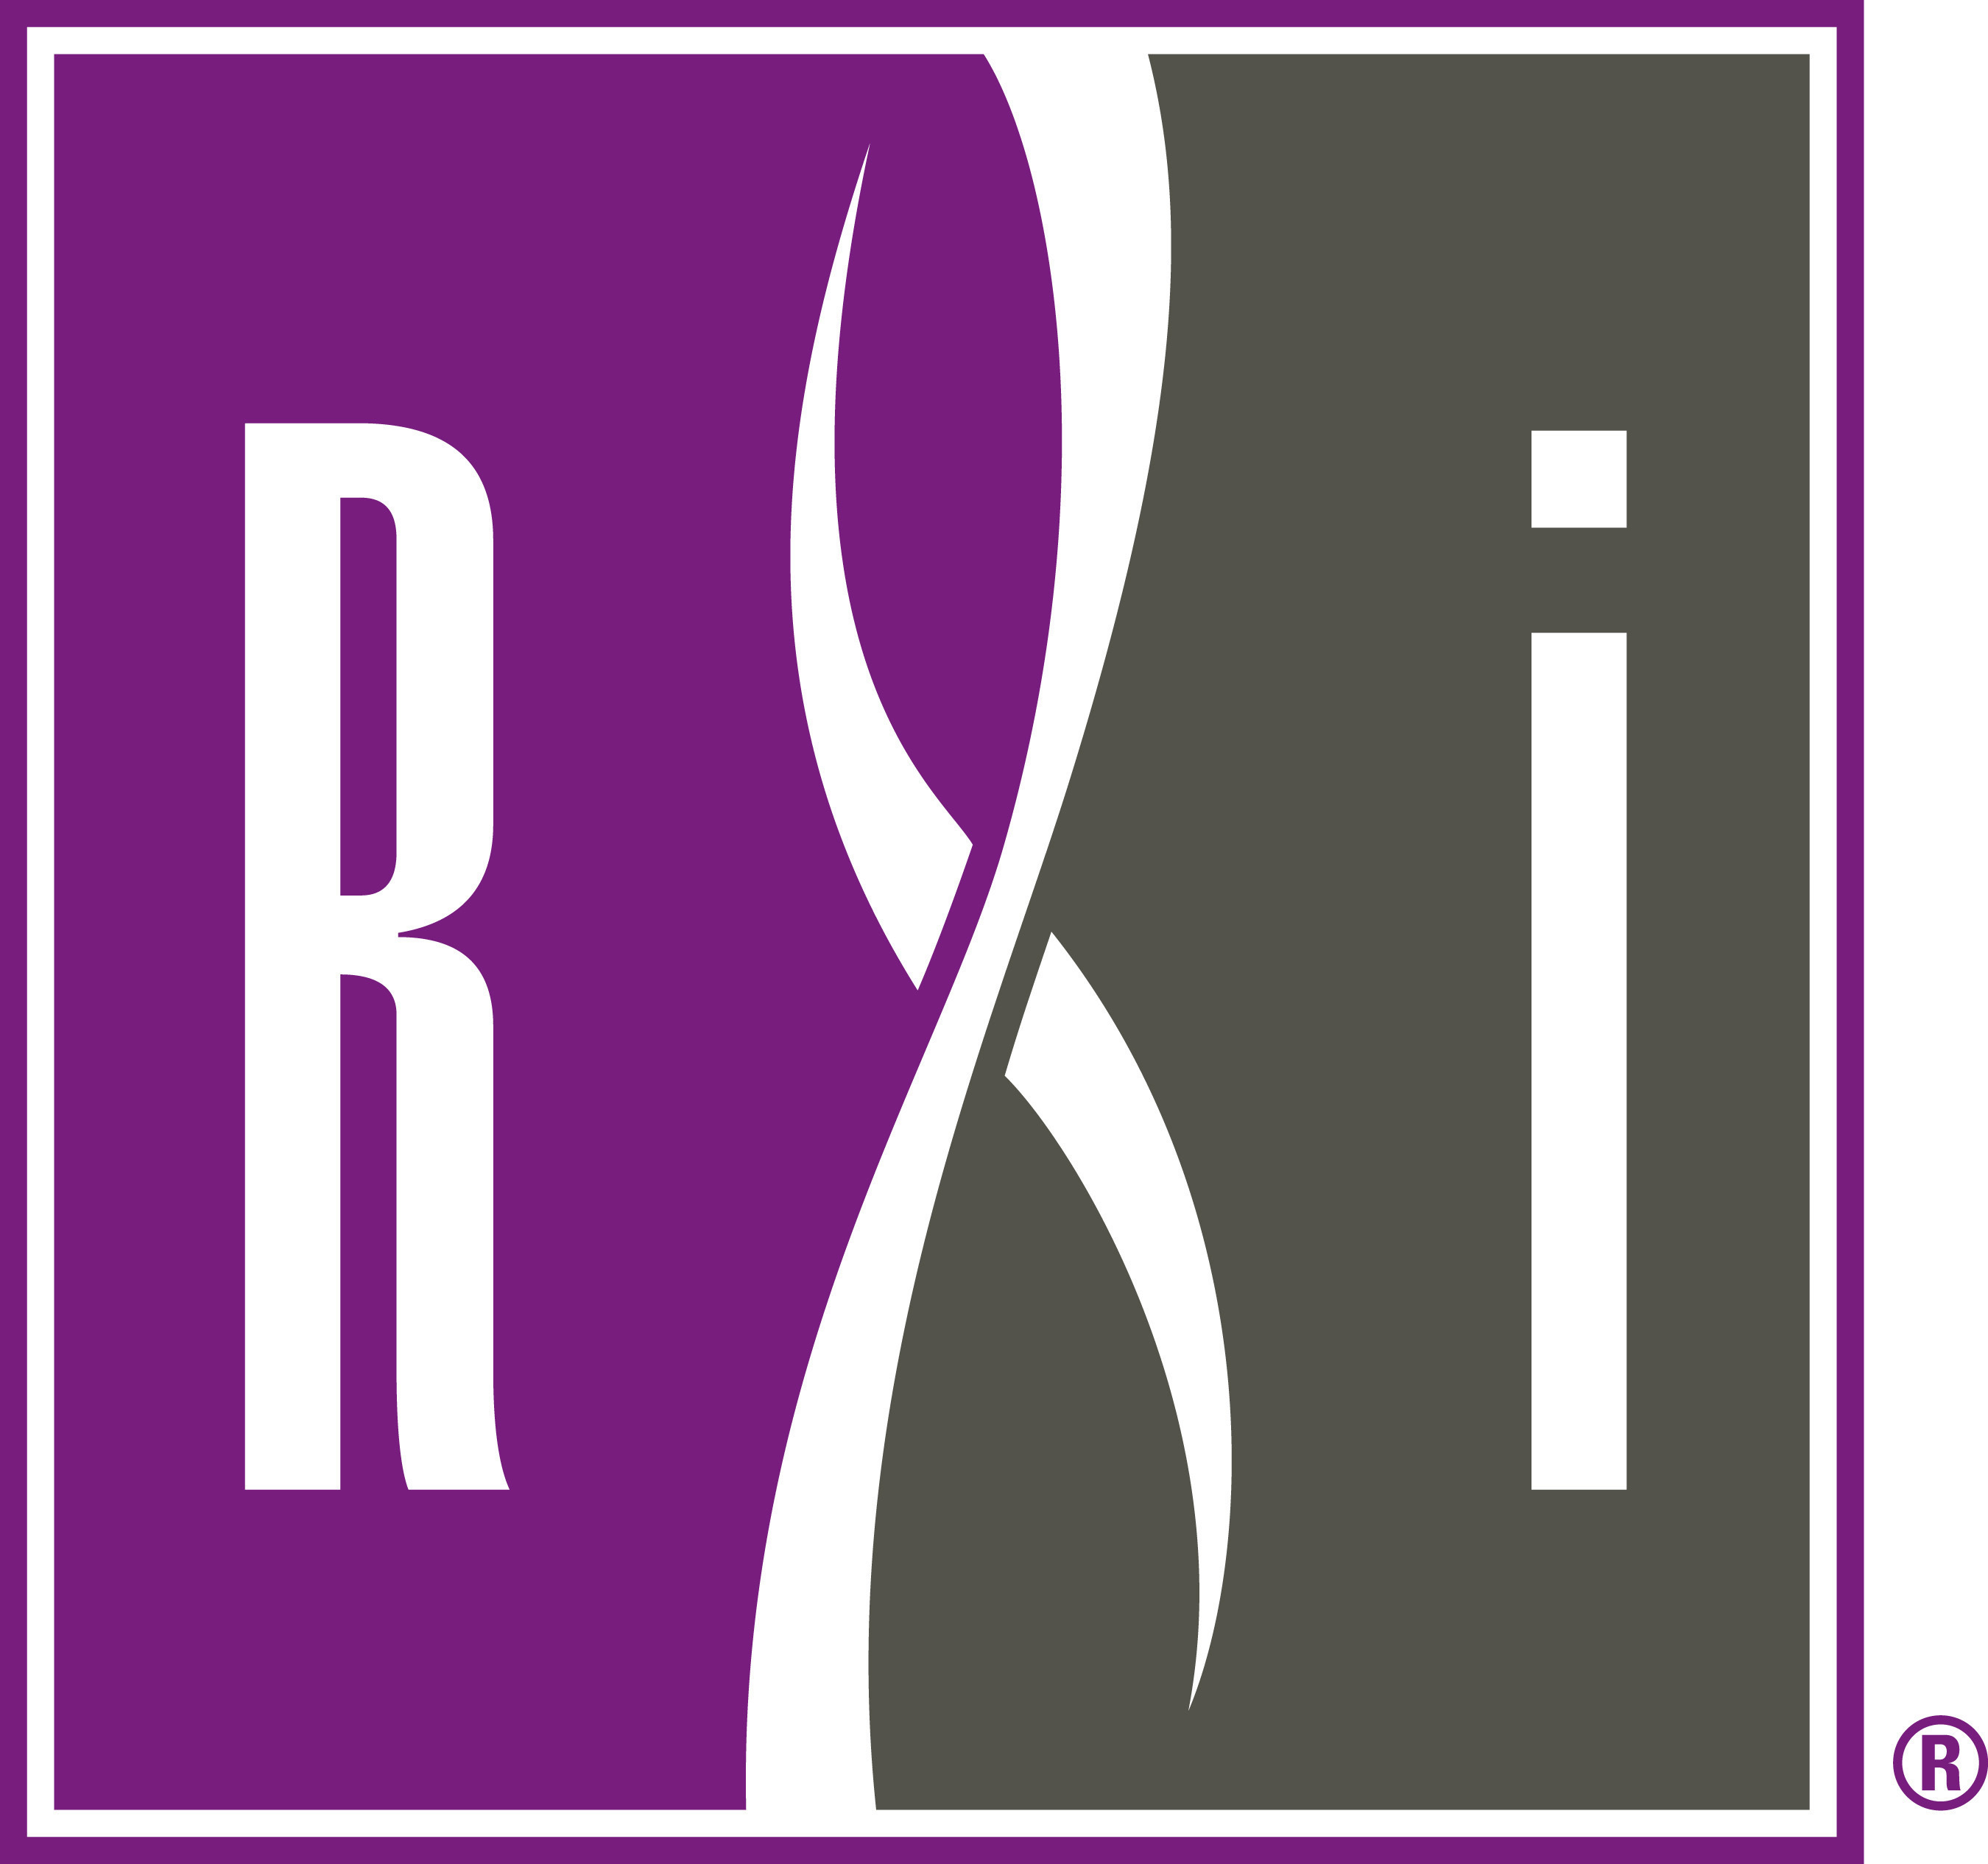 RXi Pharmaceuticals.